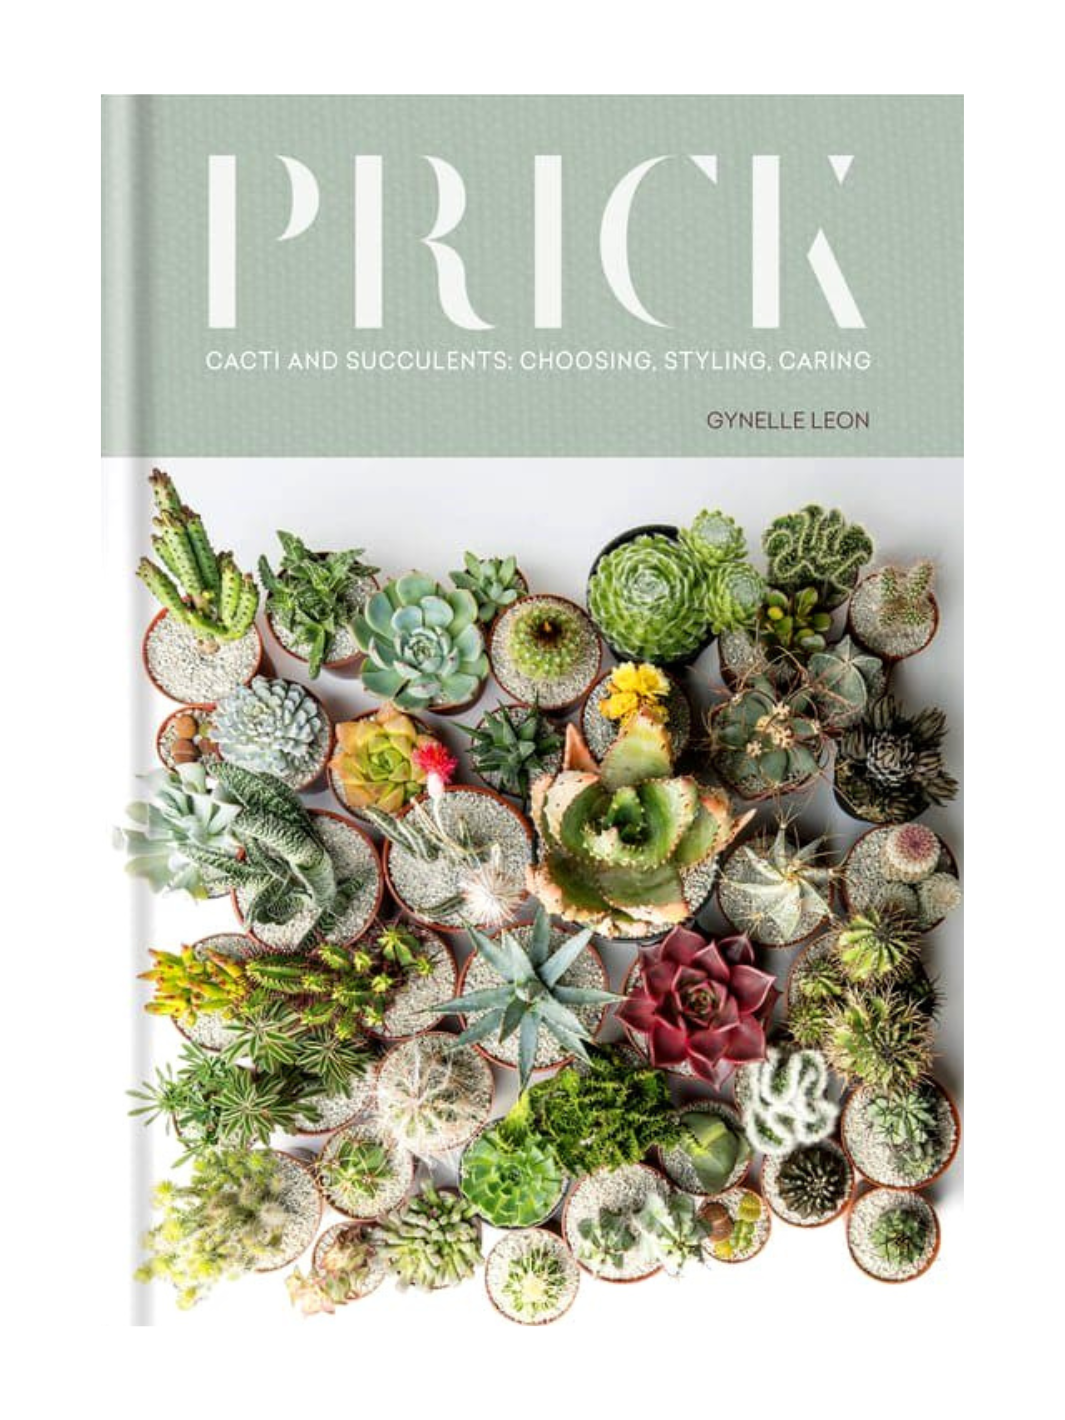 Prick Gardening Book